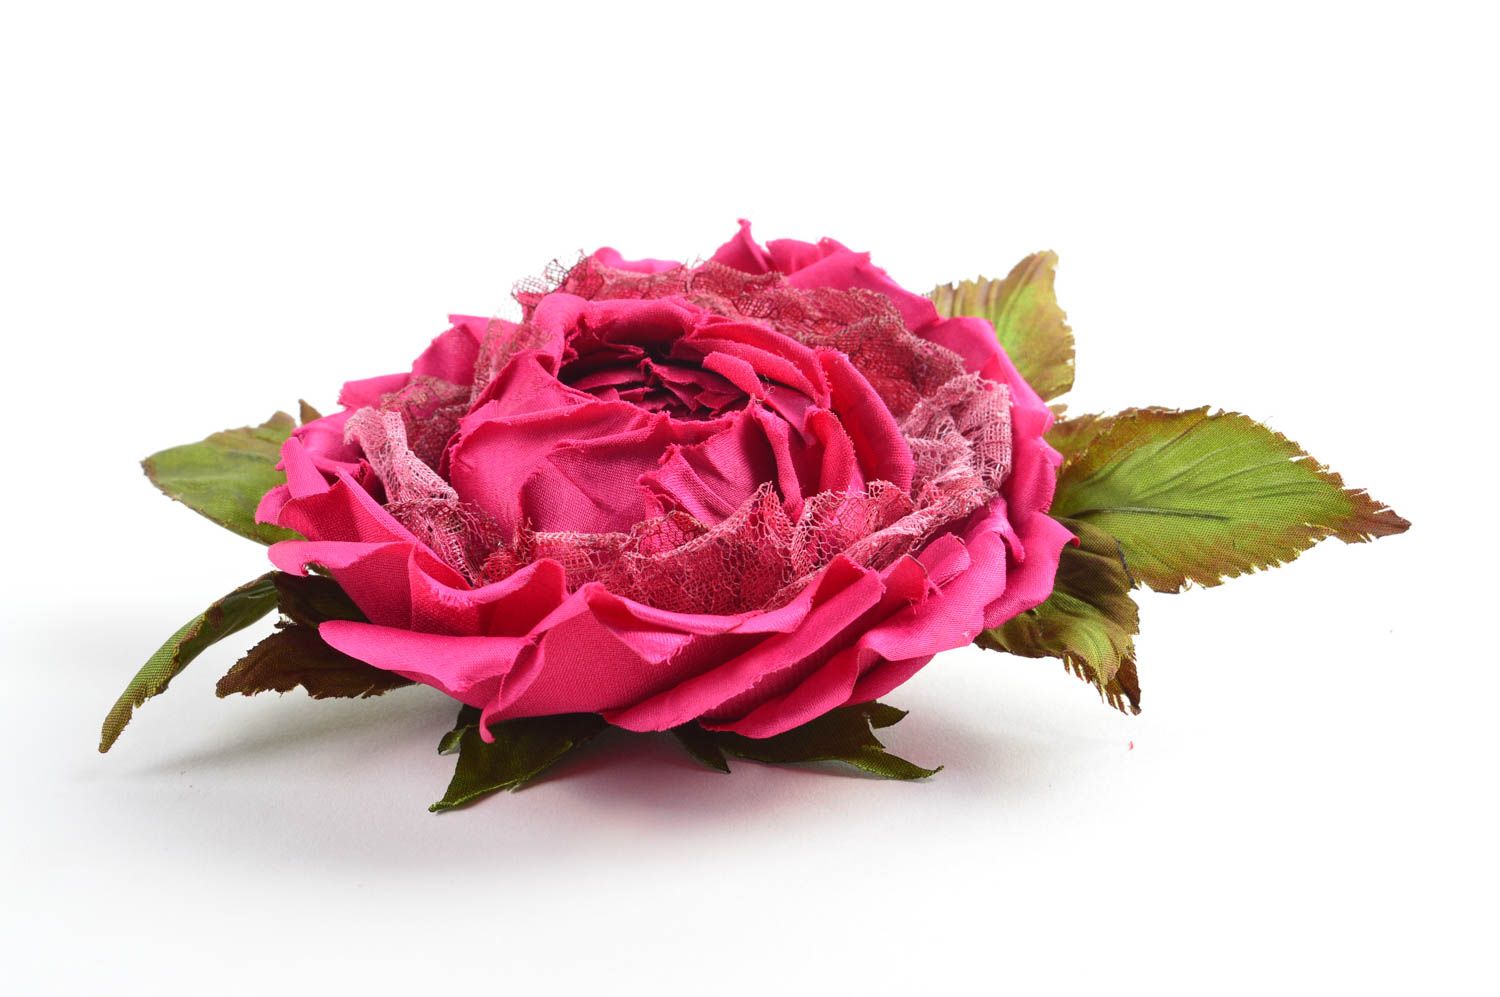 Брошь из шелка хэнд мэйд брошь-заколка пурпурная роза авторская бижутерия фото 3